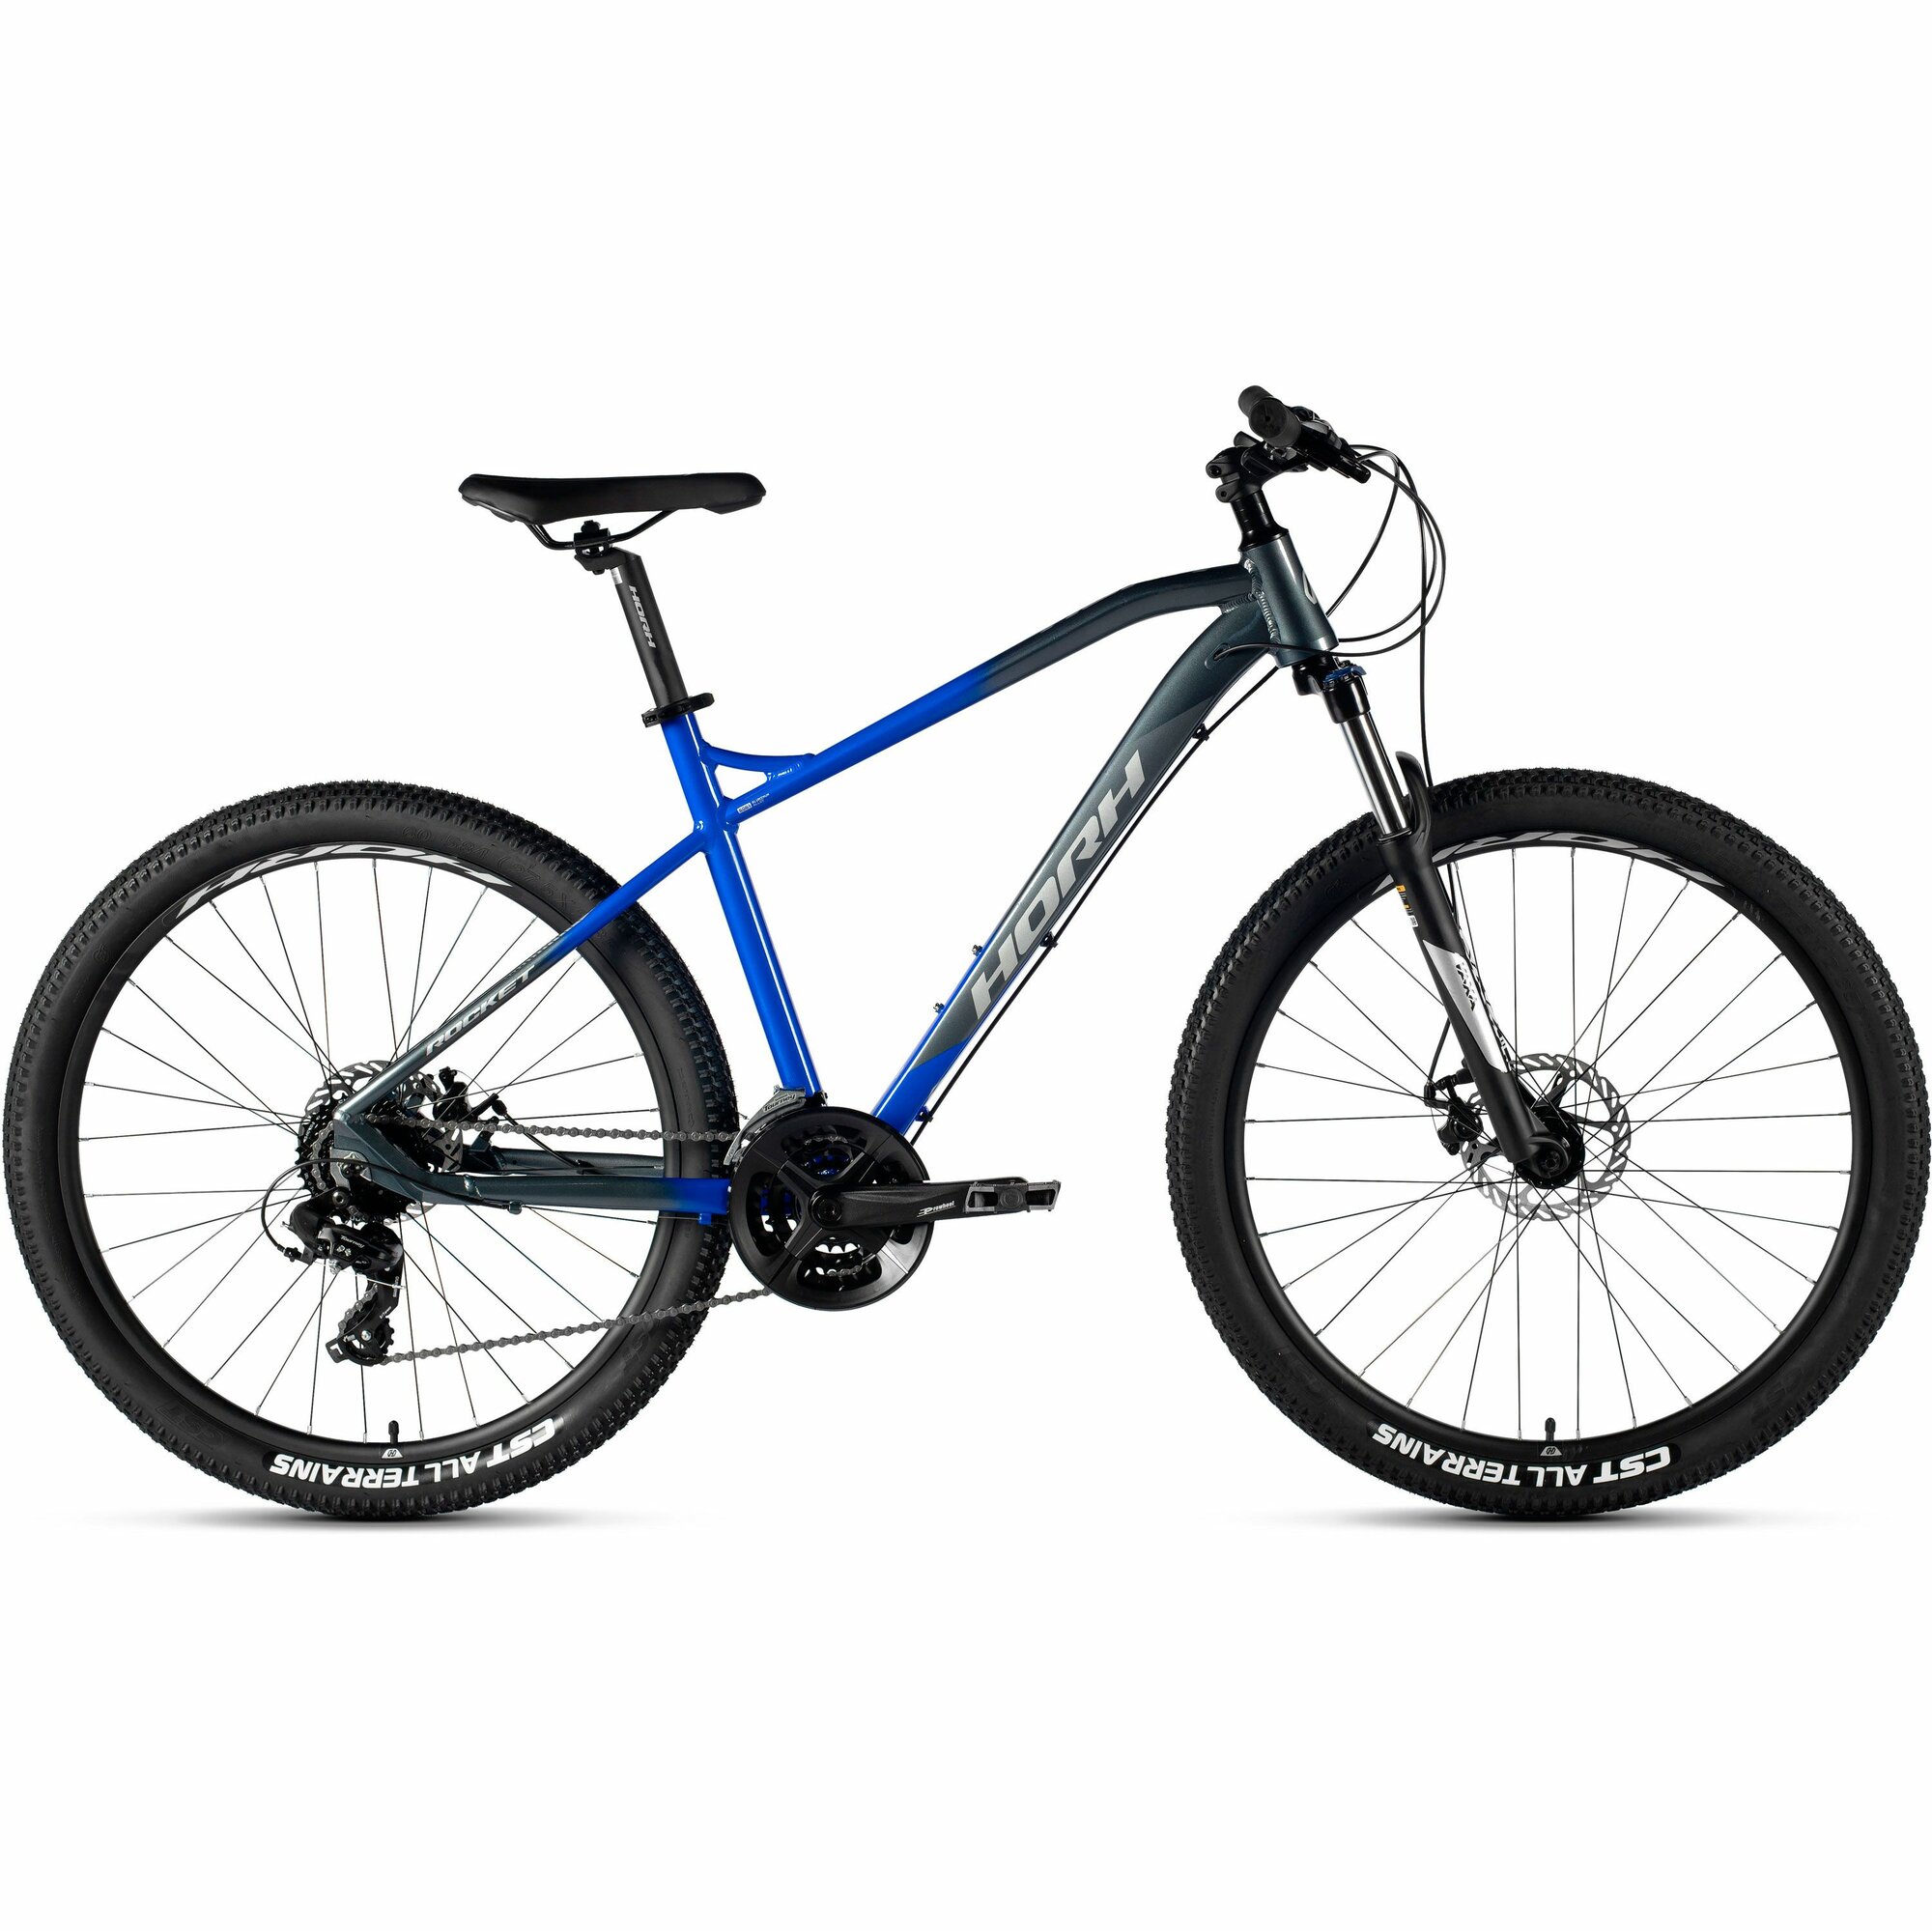 Велосипед горный HORH ROCKET RMD 7.1 27.5" (2024), хардтейл, взрослый, мужской, алюминиевая рама, оборудование Shimano Tourney, 24 скорости, дисковые механические тормоза, цвет Grey-Blue-Black, серый/синий/черный, размер рамы 15", для роста 160-170 см